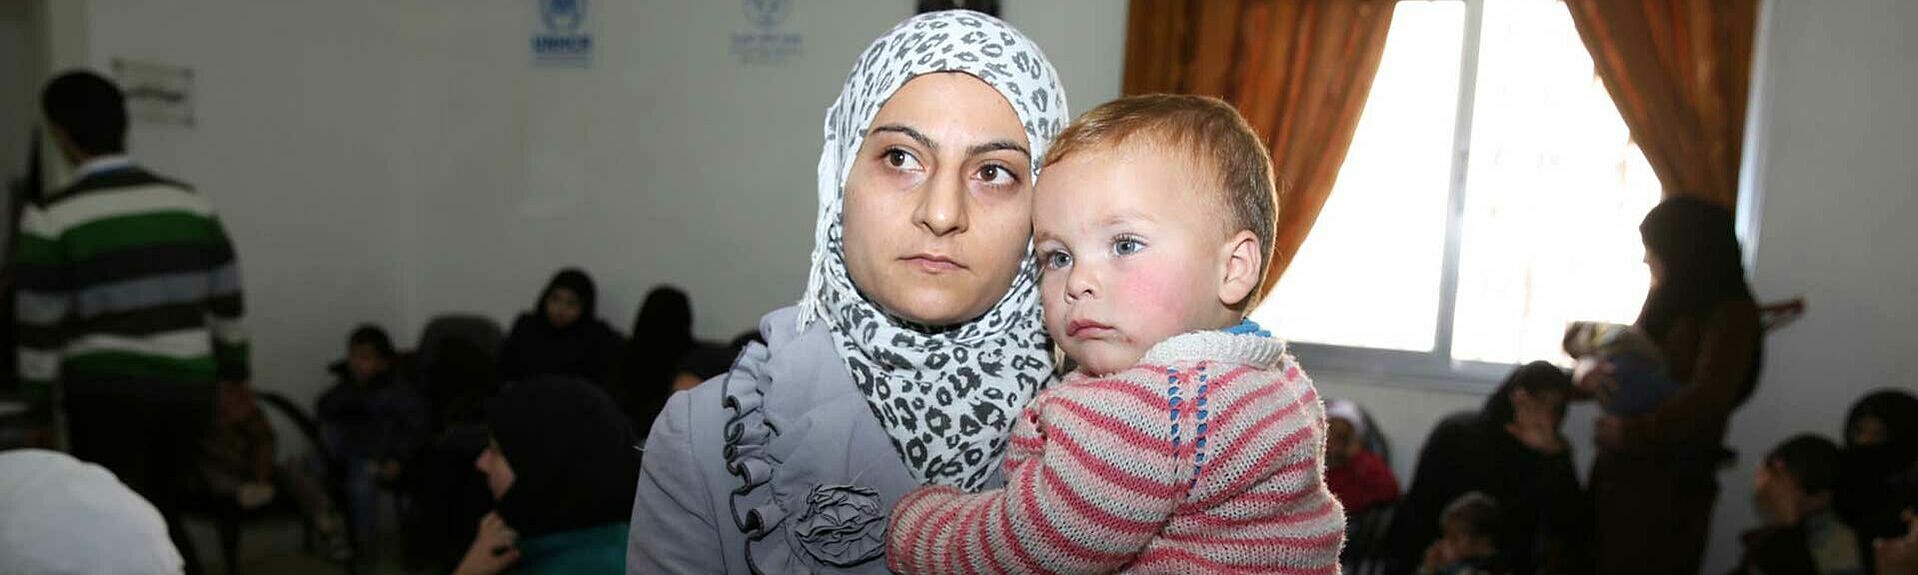 Diese Frau wartet mit ihrem Neffen auf eine Behandlung in der UNHCR-Klinik Akramia in Aleppo. Foto: UNHCR